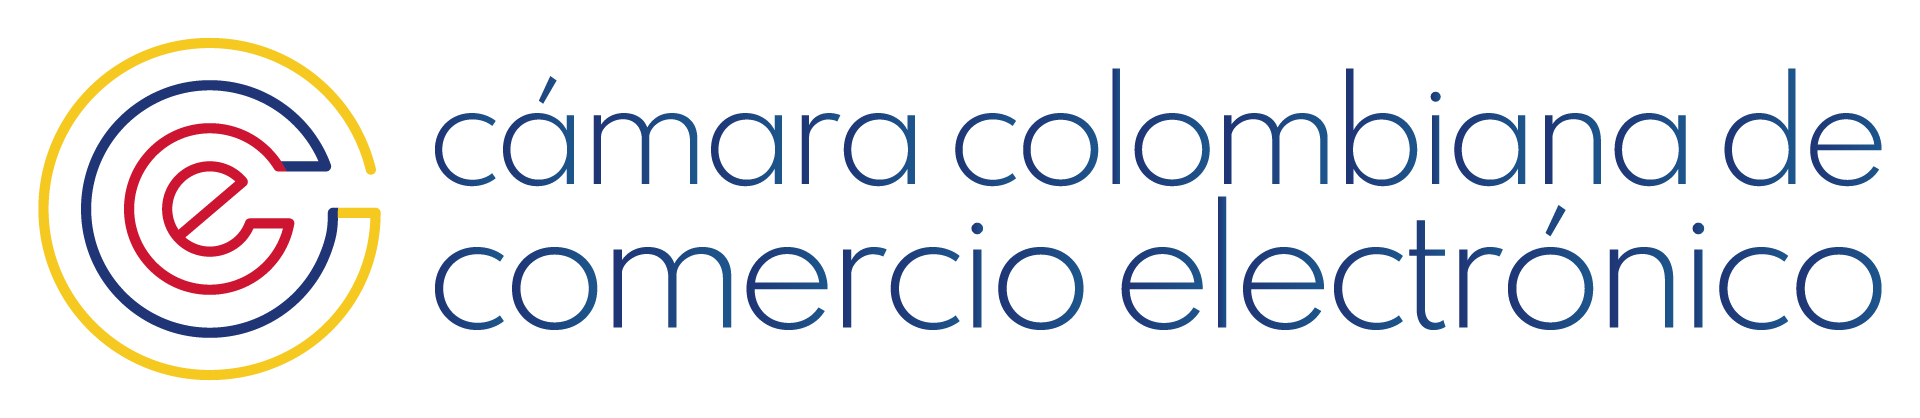 Camara Colombiana de Comercio Electrónico